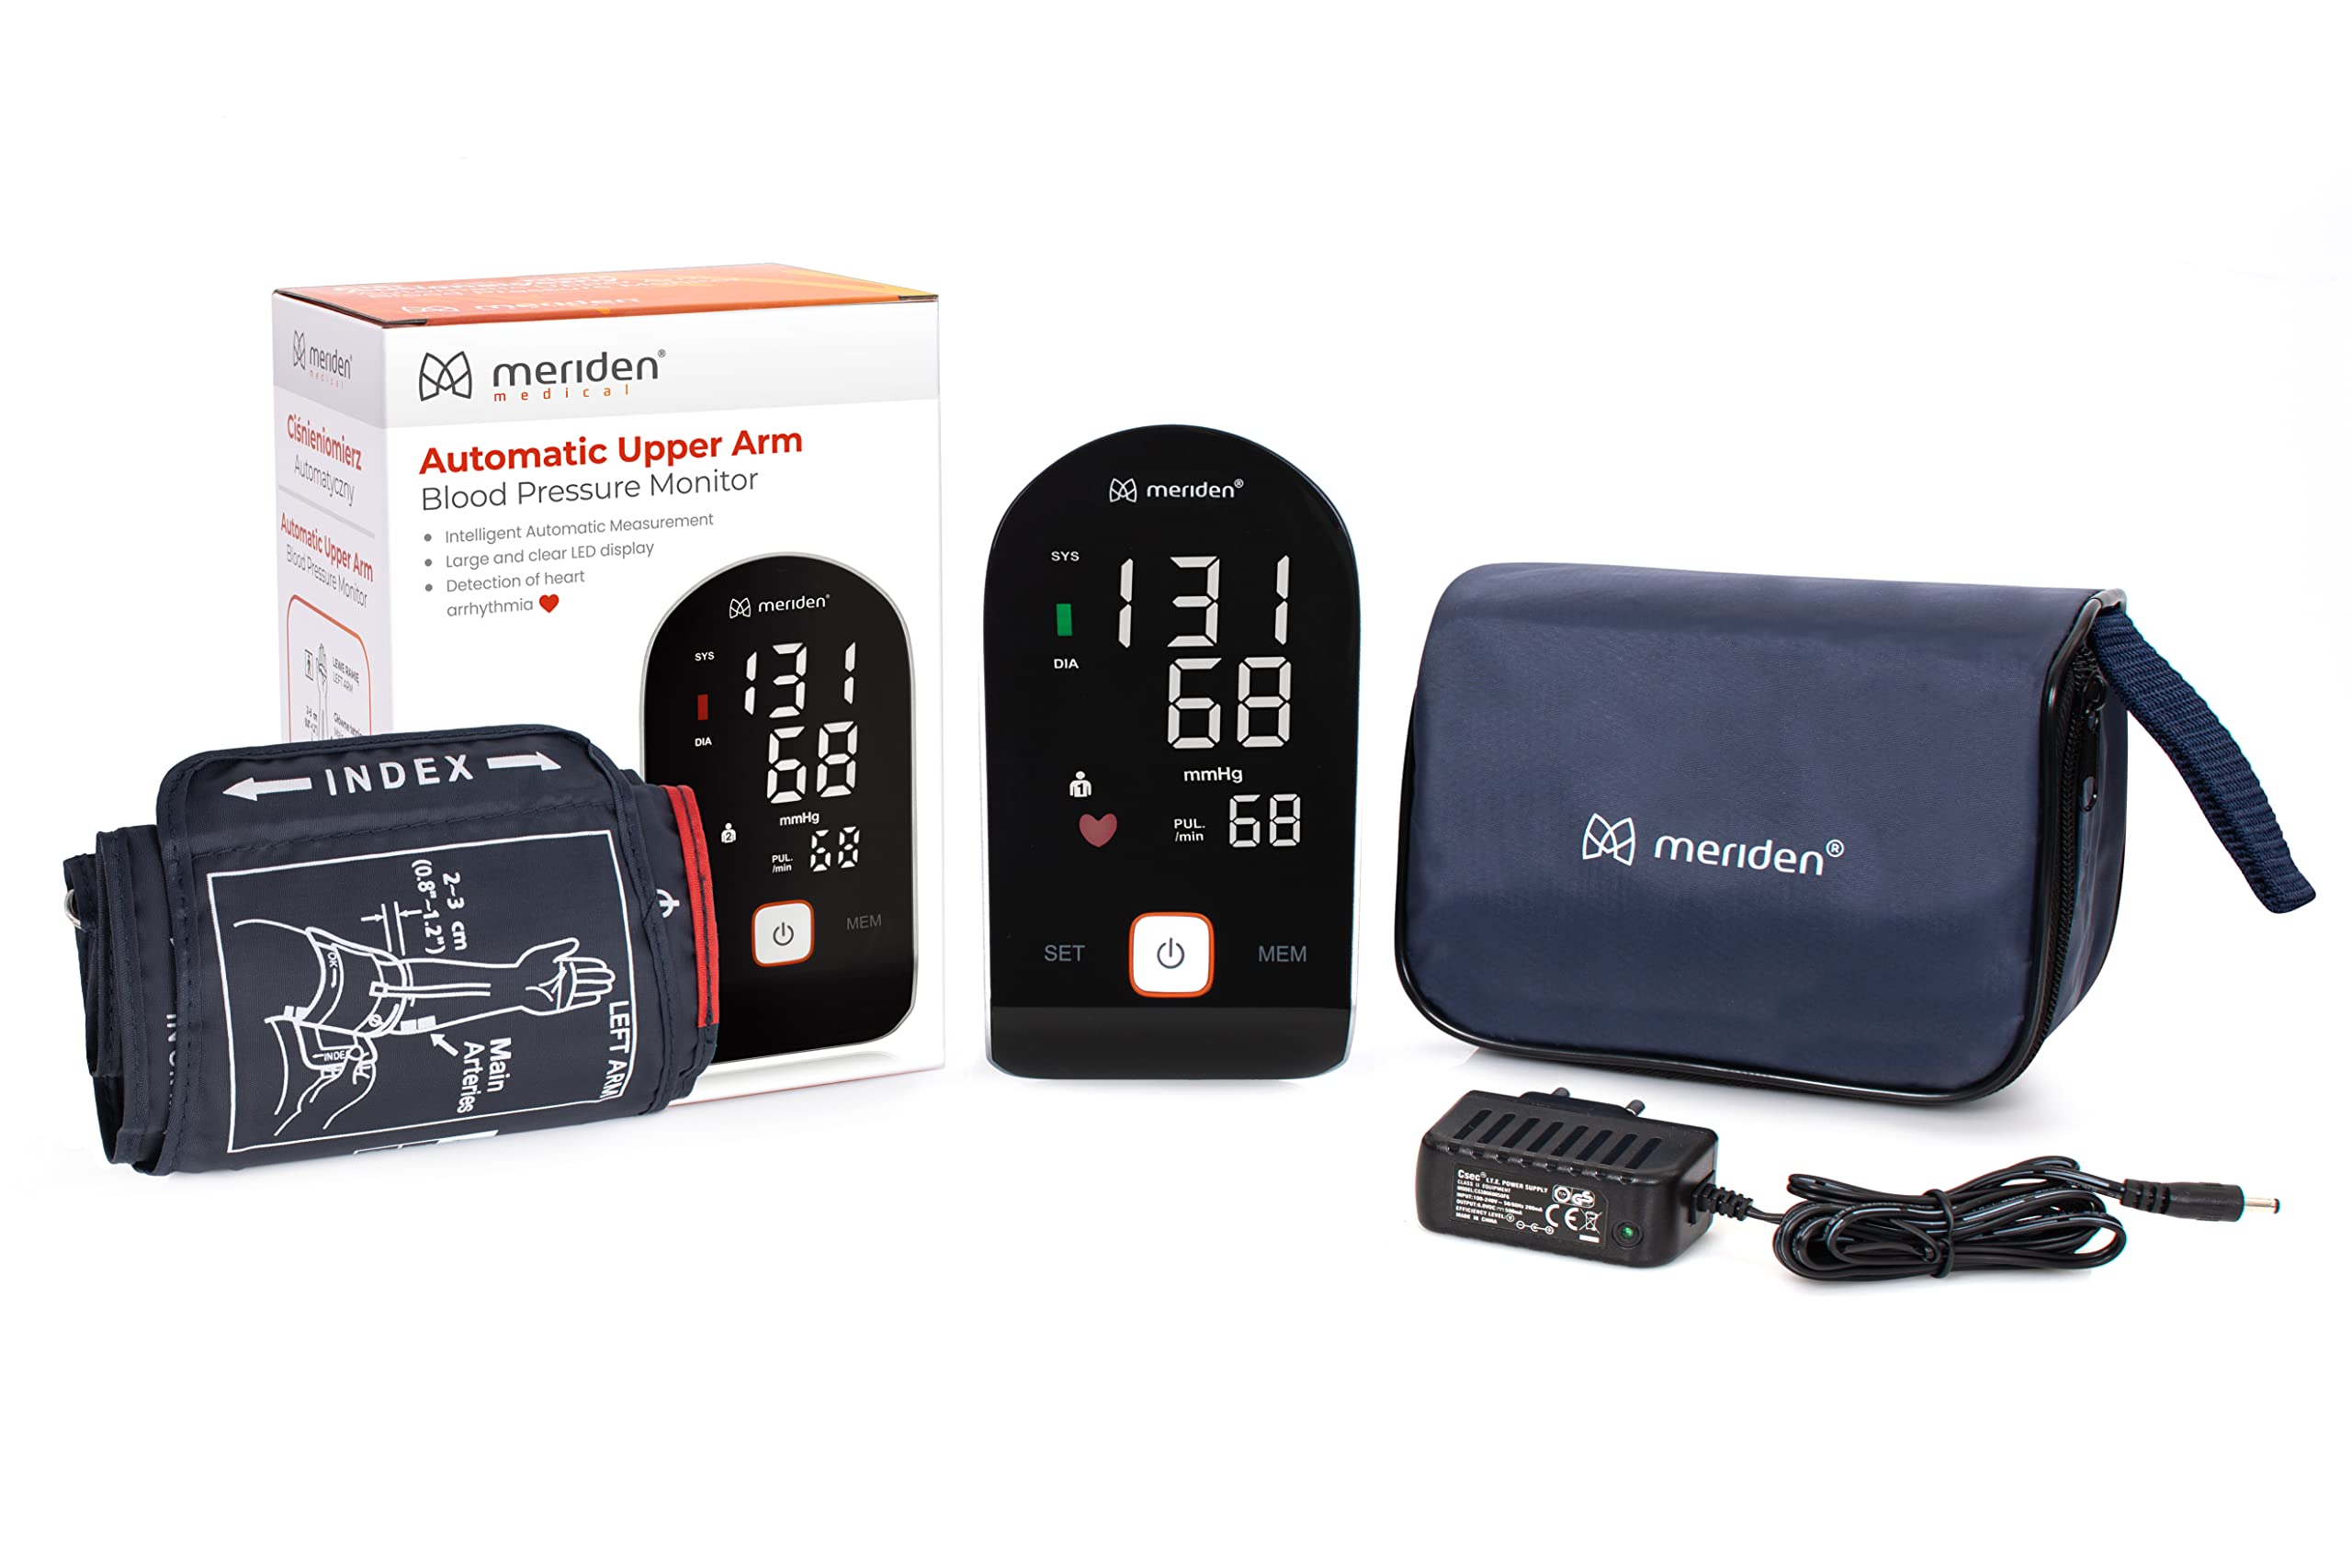 MERIDEN Oberarm-Blutdruckmessgerät Xlive3, 2 Benutzer x 90 Messwerte mit Arrhythmie-Erkennung Blutdruck- und Pulsmessung Großes LED Display Blutdruckmessgerät für Oberarmumfänge von 22-42 cm